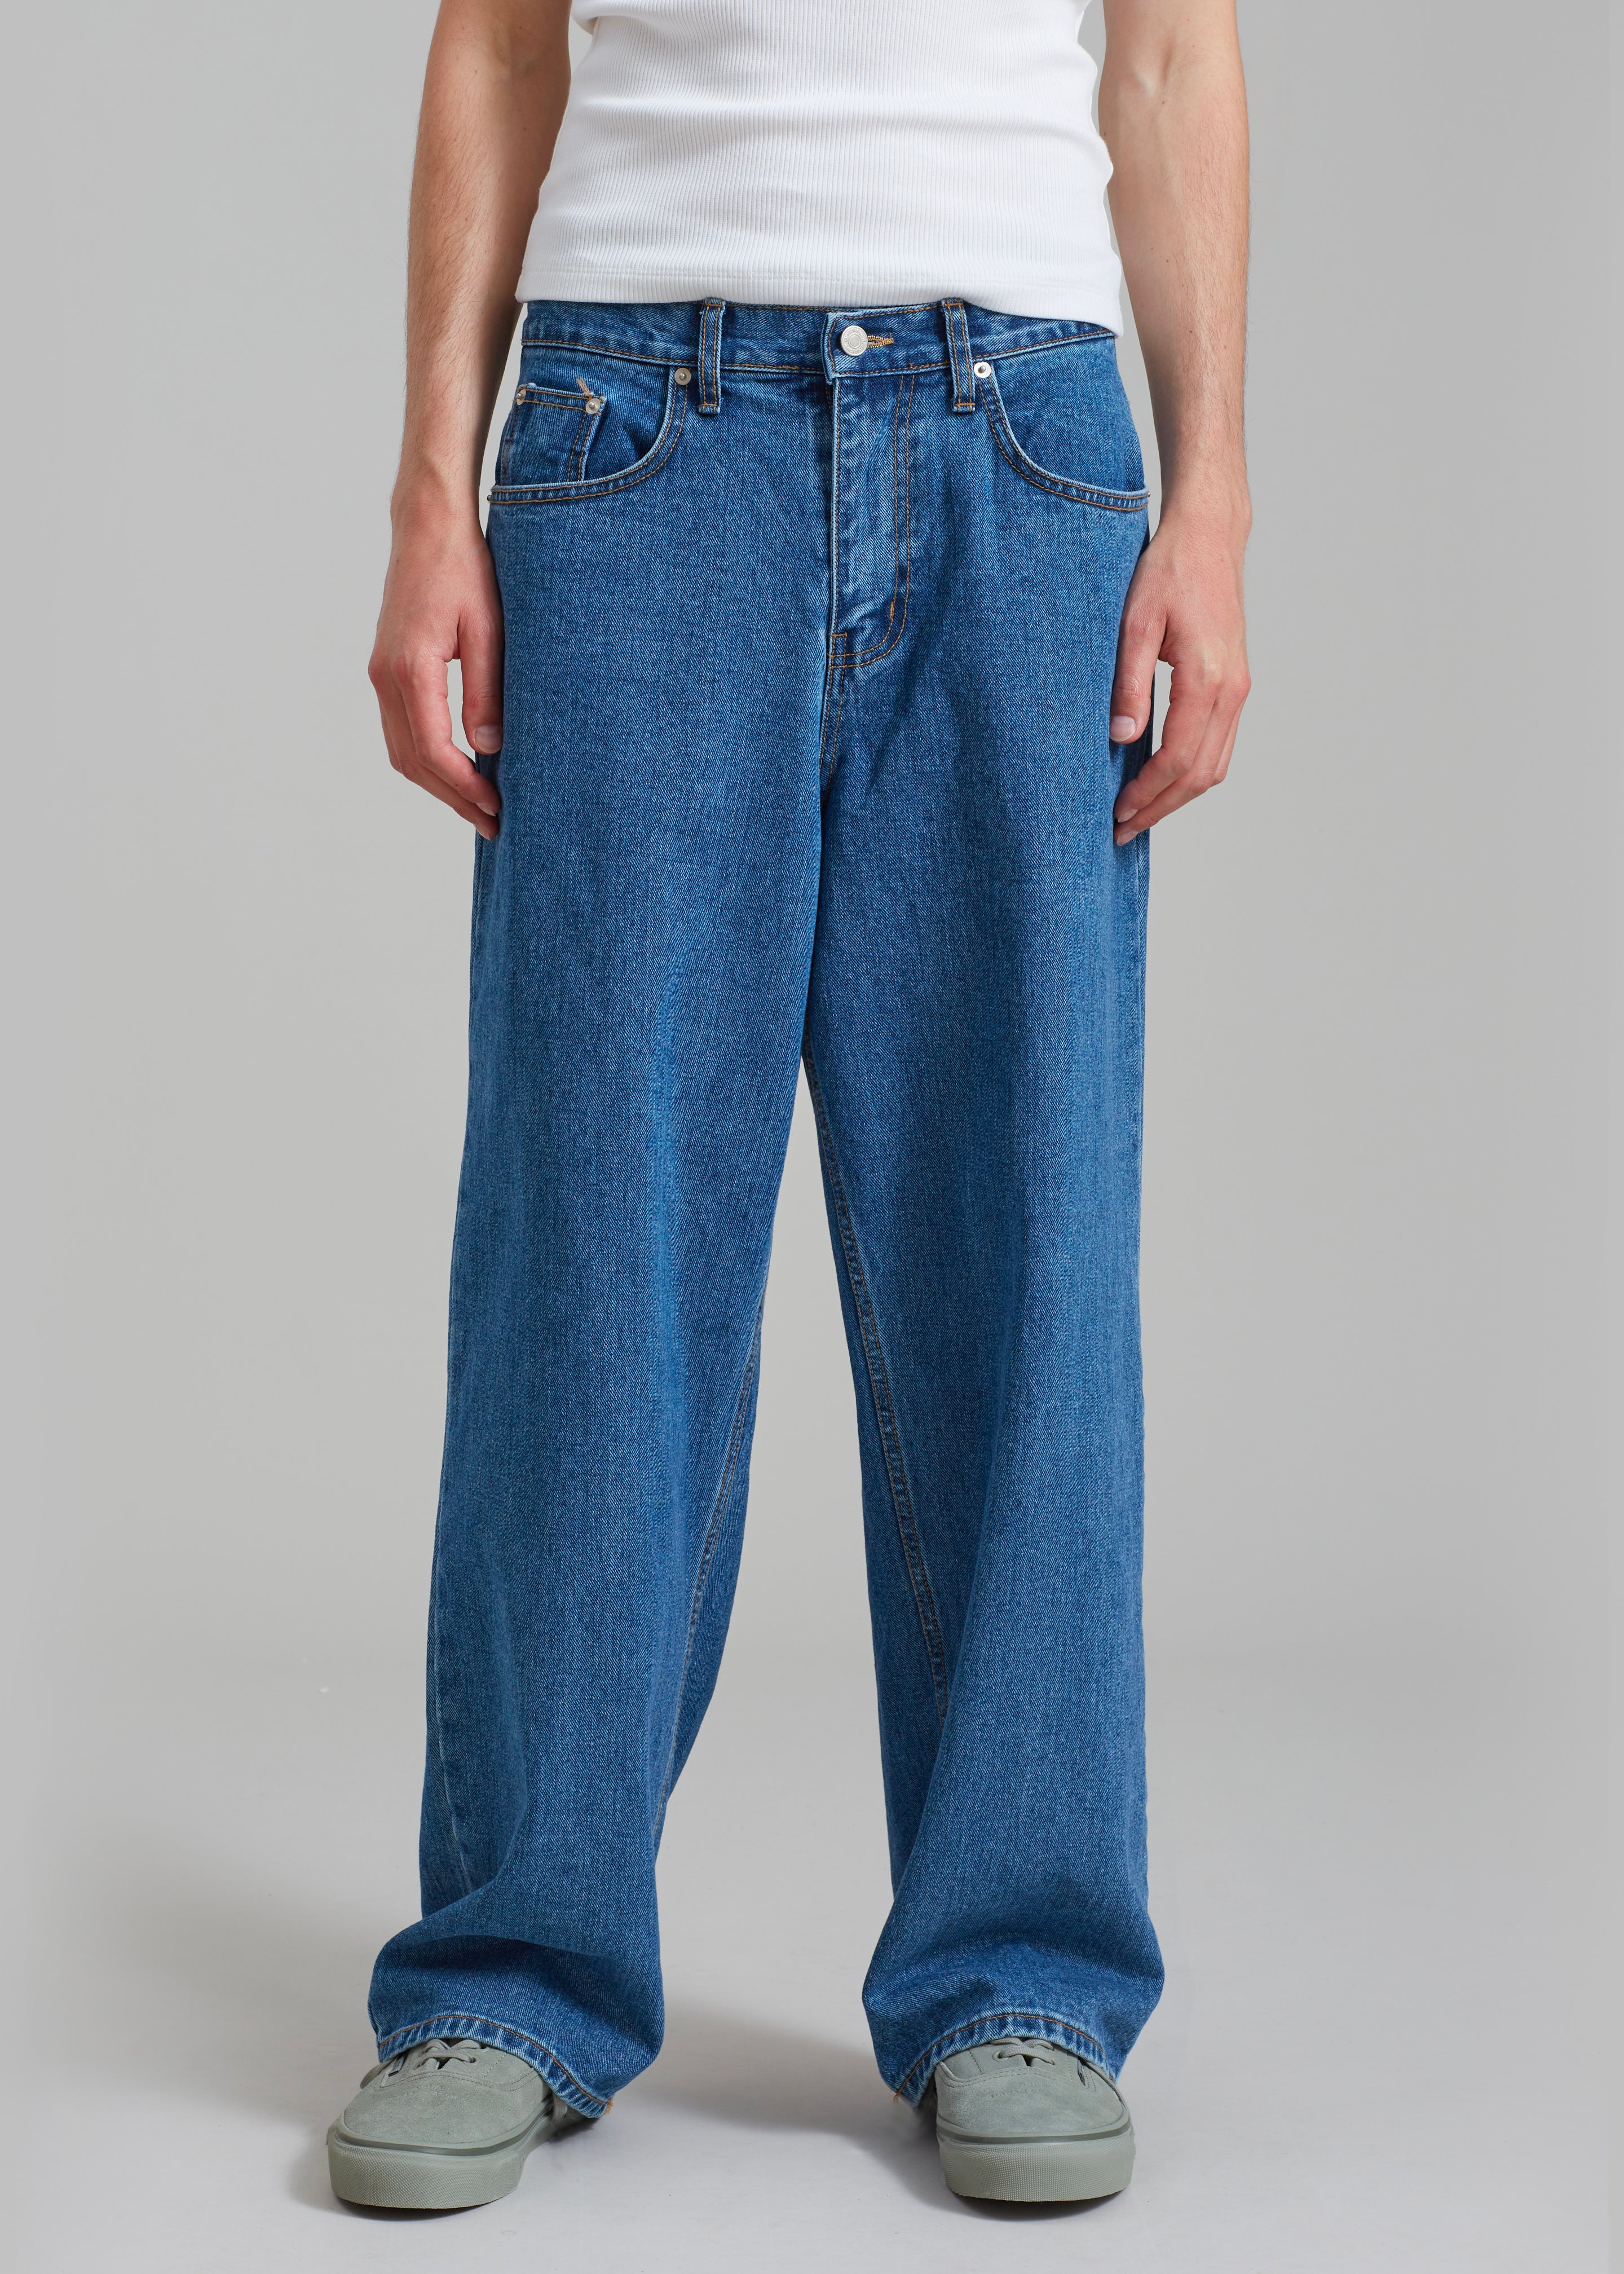 Connor Jeans - Medium Wash - 6